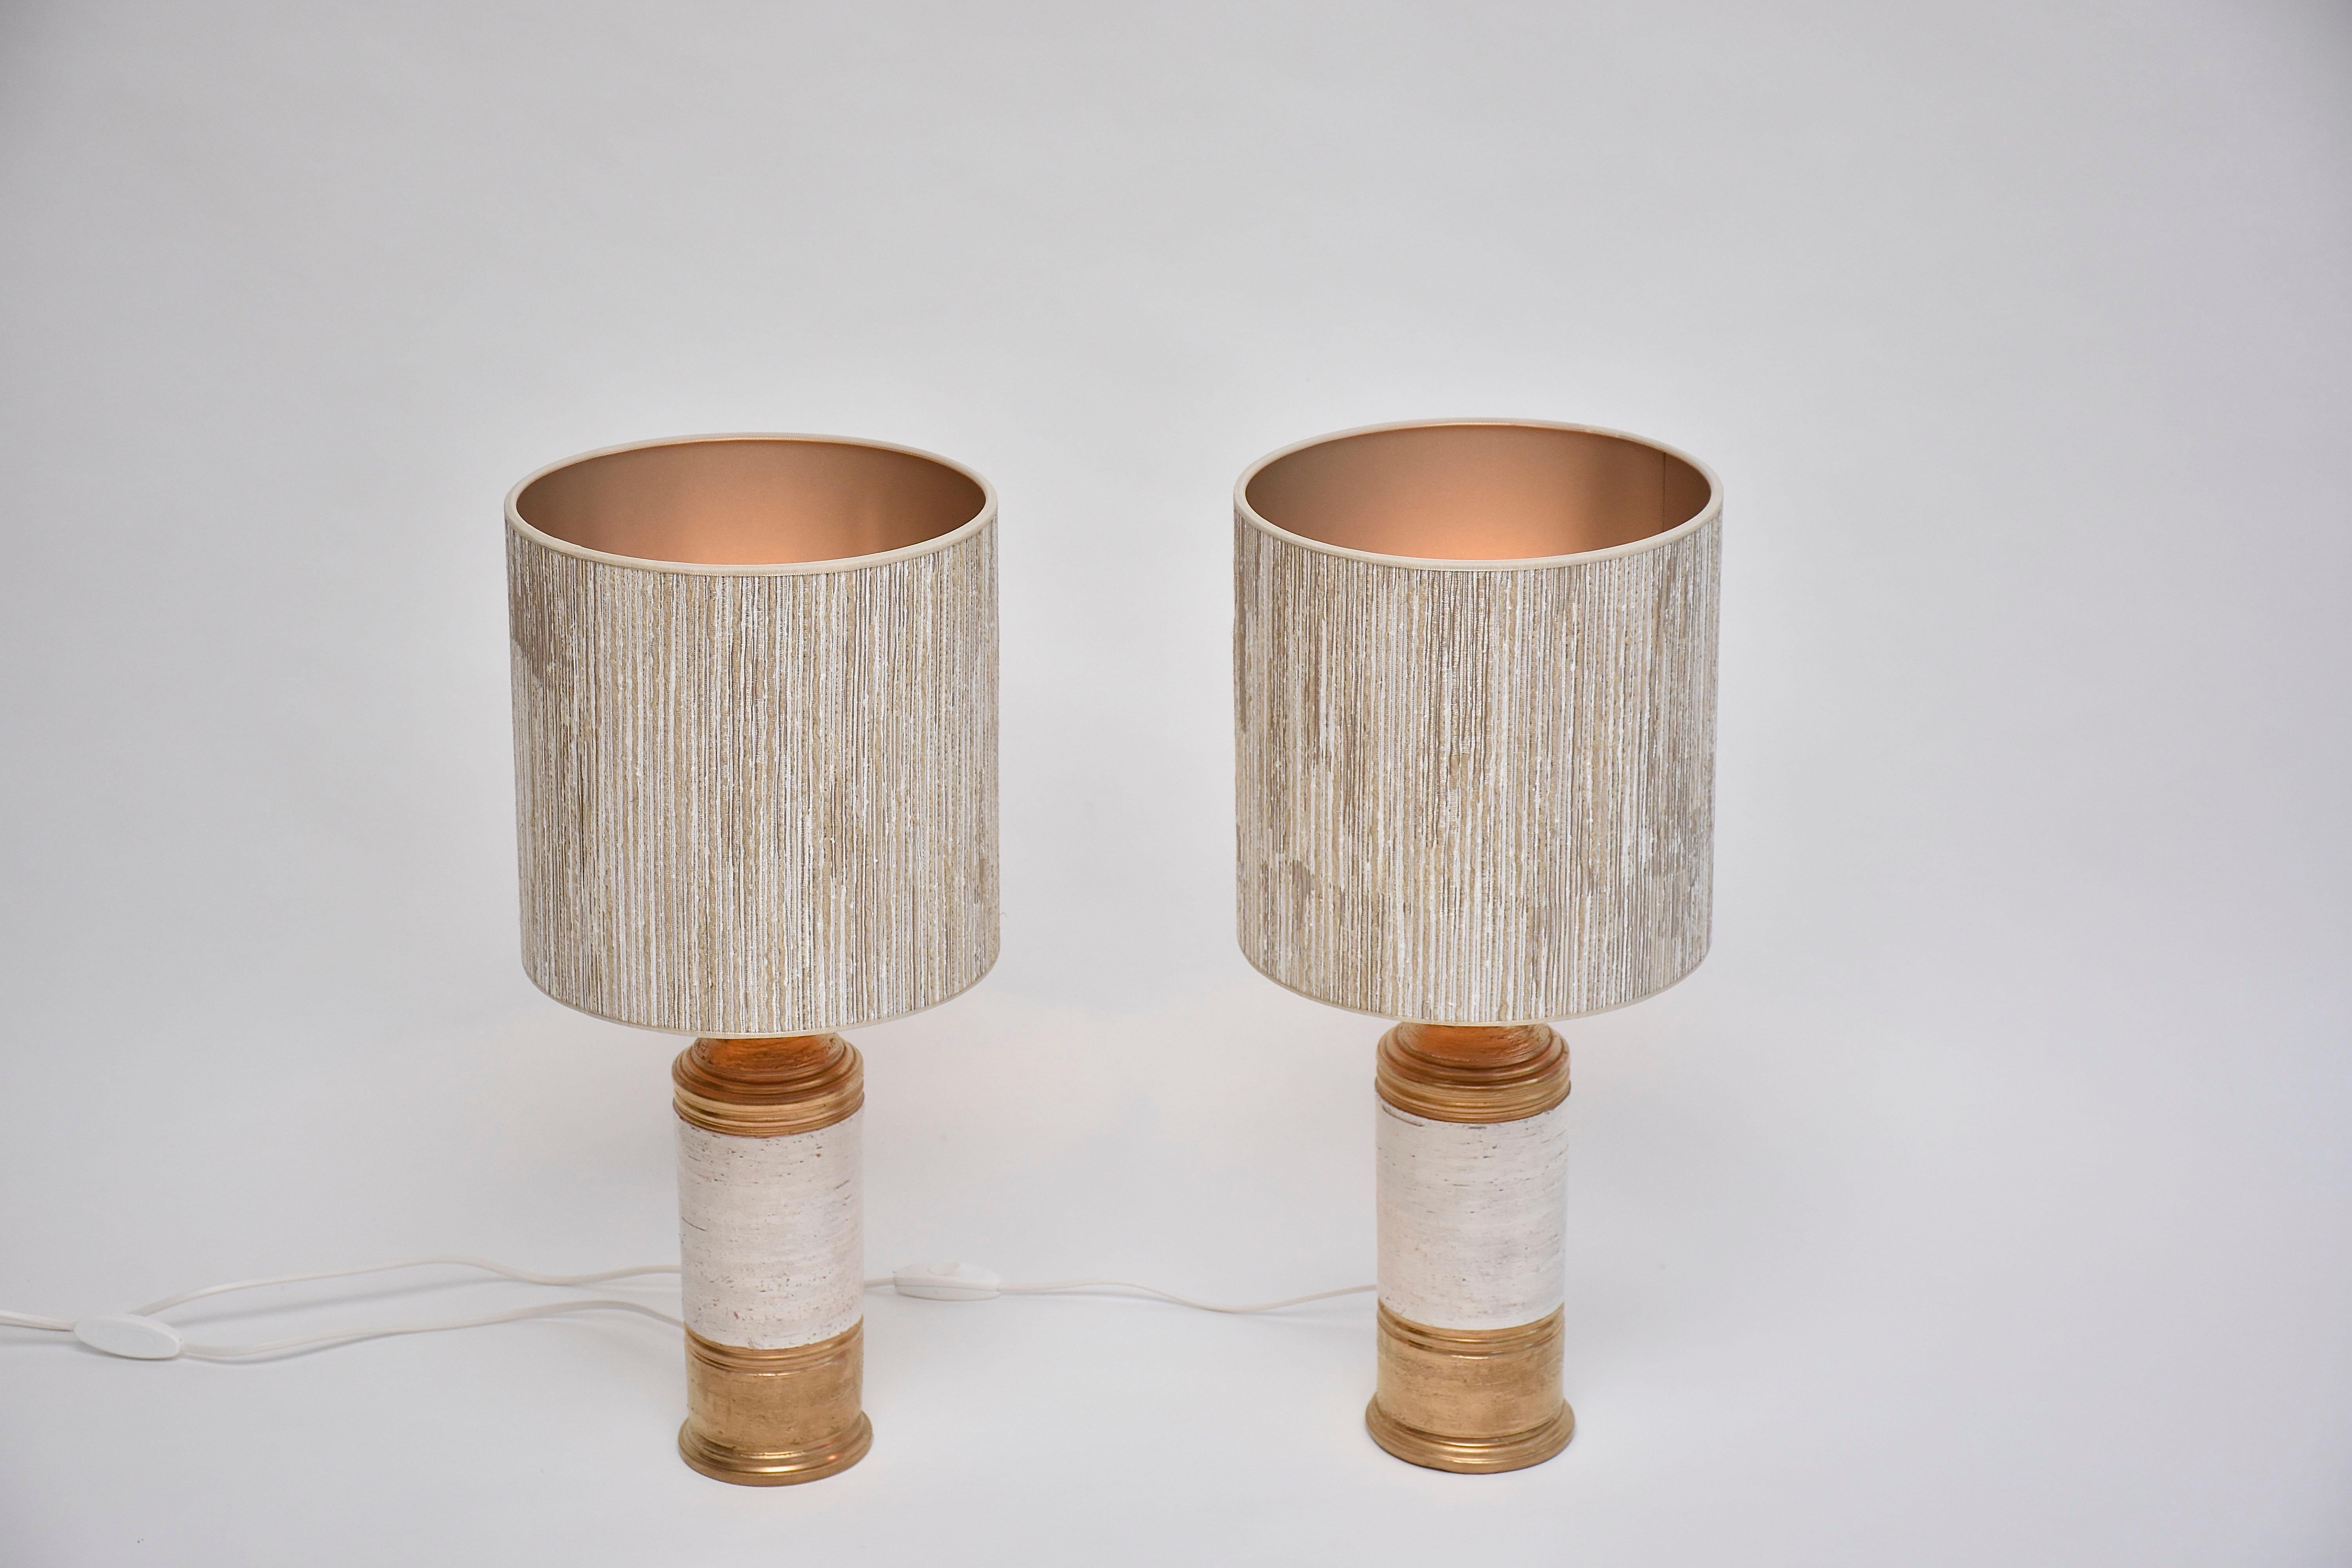 Schönes Paar Keramik-Tischlampen, entworfen von Bitossi für Bergboms - Schweden.
Diese hübschen Lampen haben einen goldfarben glasierten Sockel und eine goldfarbene Oberseite und in der Mitte eine weiß glasierte 